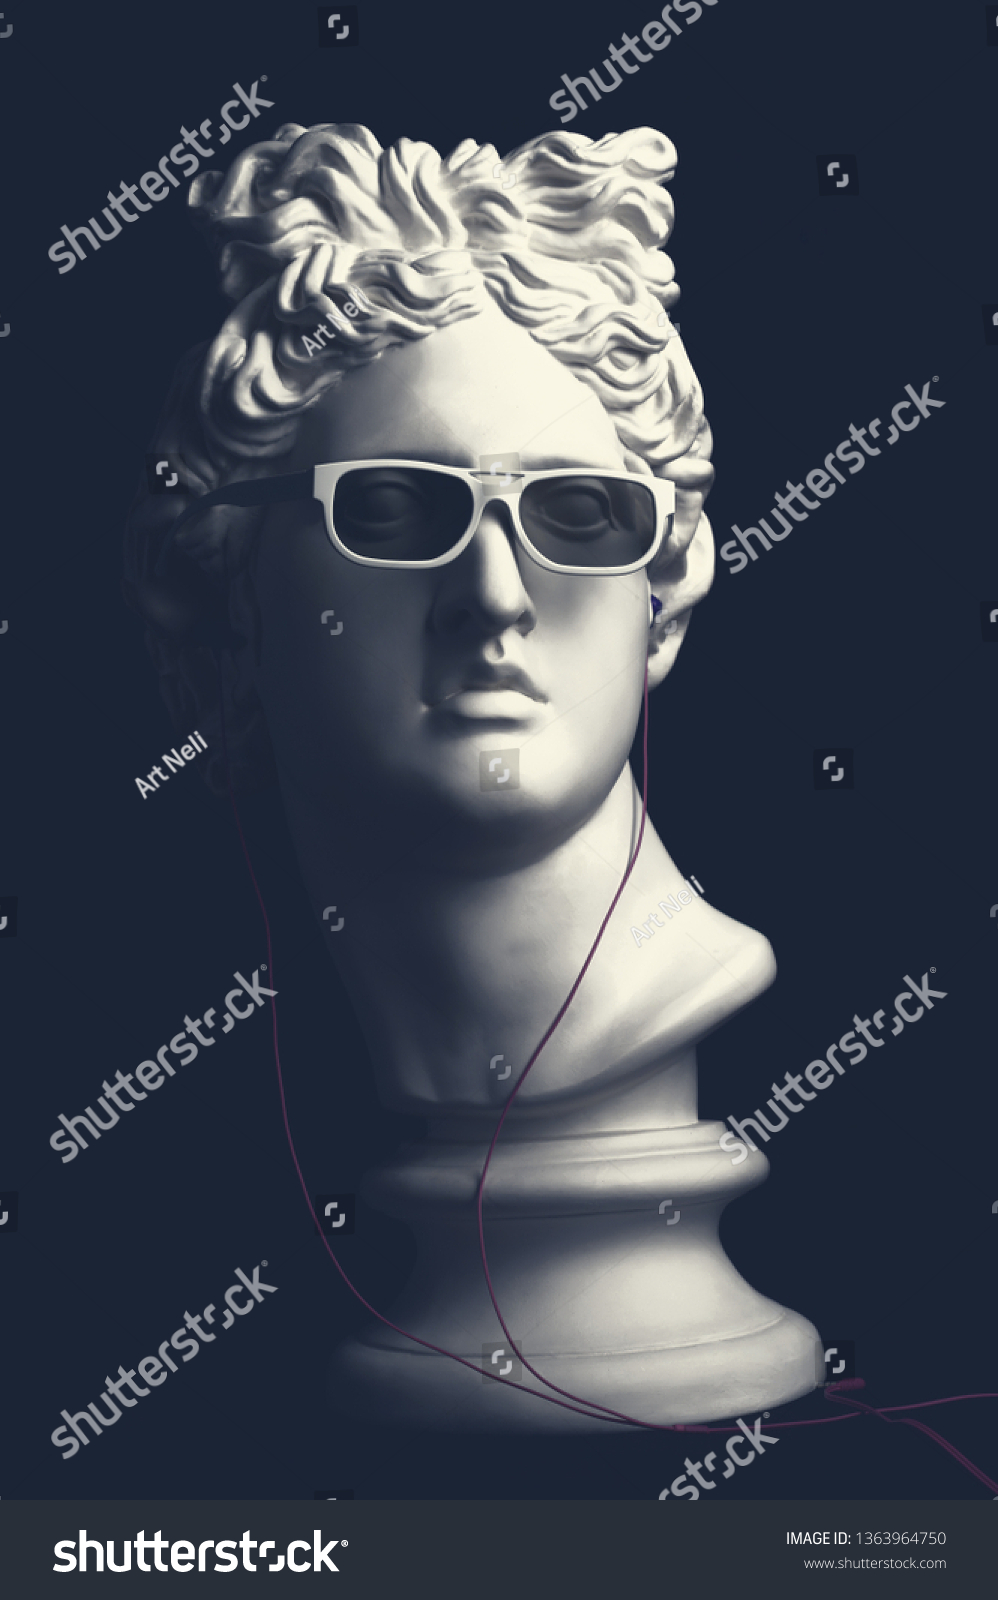 Statue. Earphone. Isolated. Gypsum statue of Apollo's head. Man. Creative. Plaster statue of Apollo's head in earphones and white sunglasses. Apollo Belvedere. Artwork #1363964750